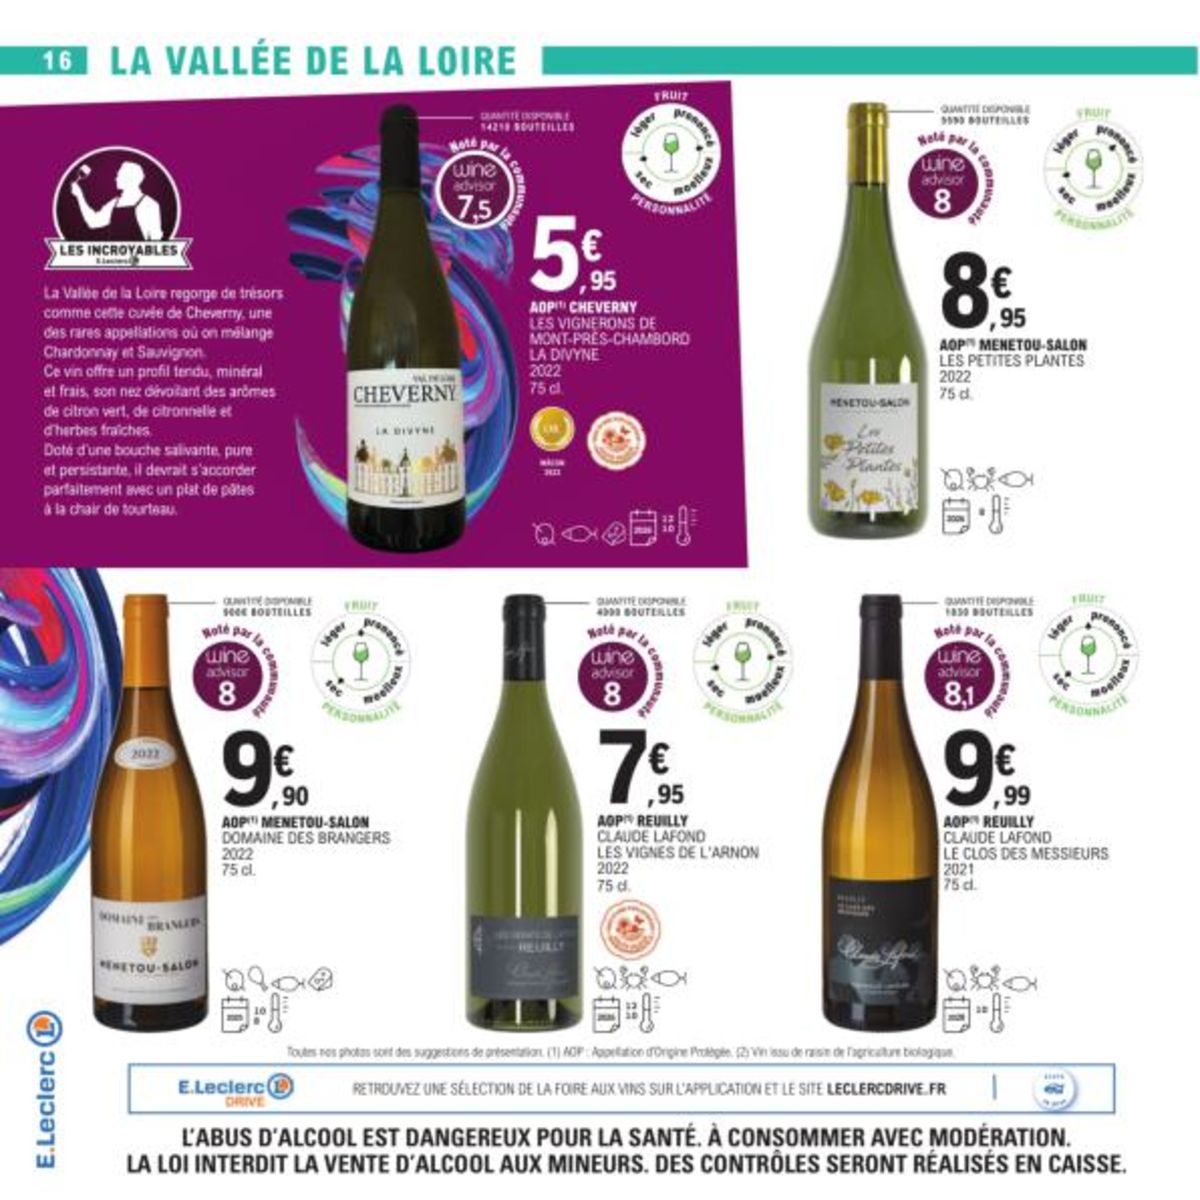 Catalogue Foire Aux Vins - Mixte, page 00027